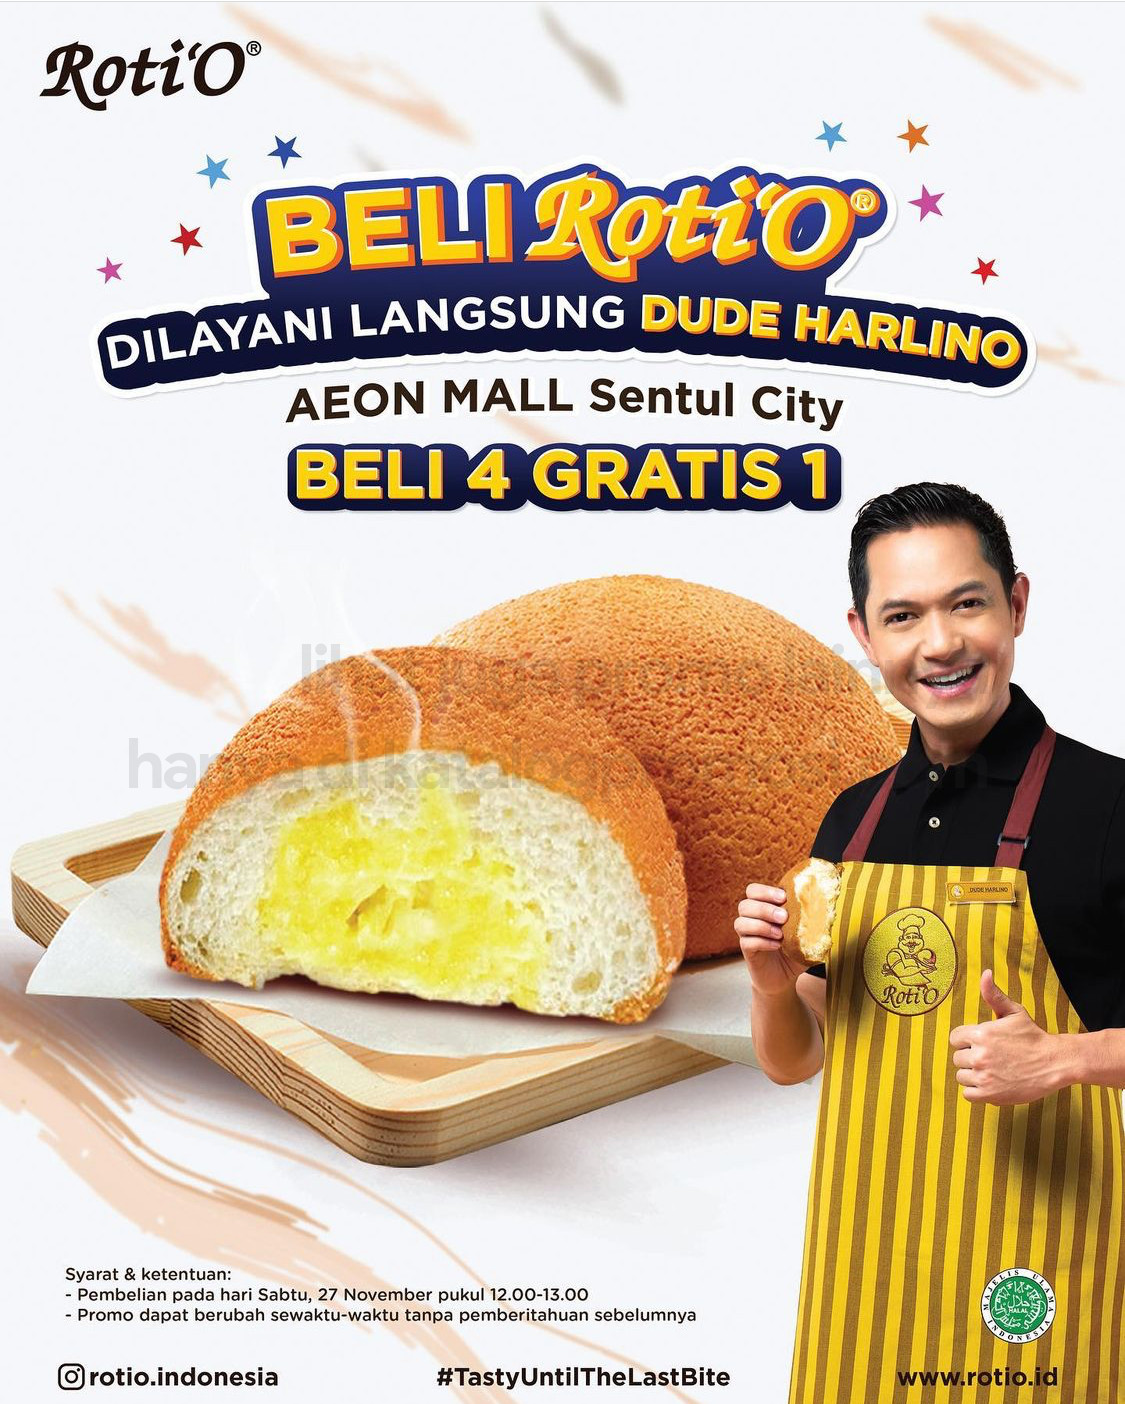 Roti’O AEON Mall Sentul City promo BELI 4 GRATIS 1 dan langsung dilayani oleh Dude Harlino